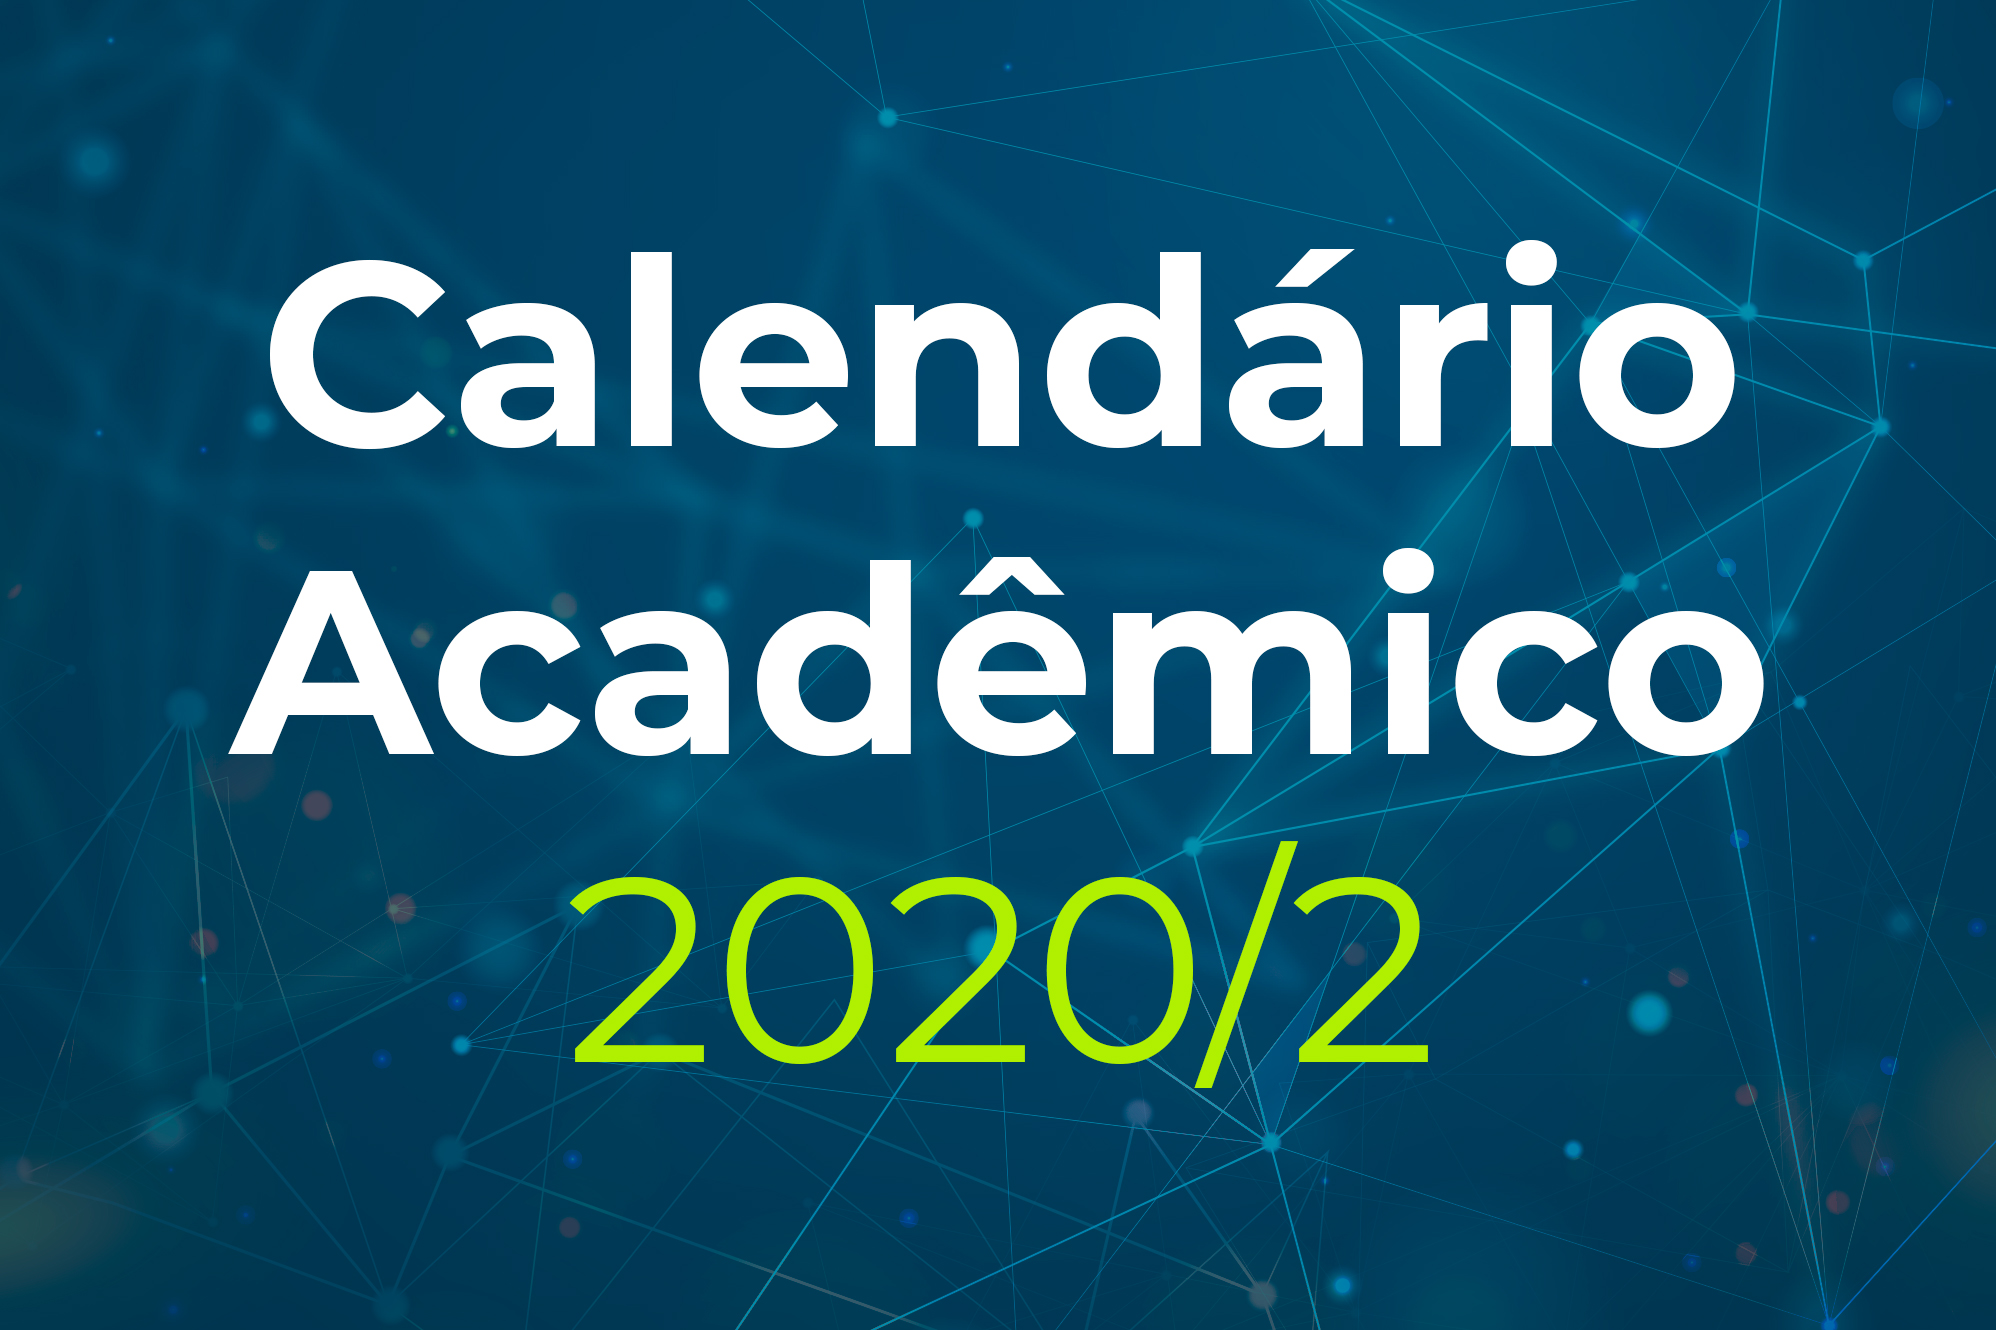 Calendário Acadêmico 2020 - Período Acadêmico Emergencial (PAE)